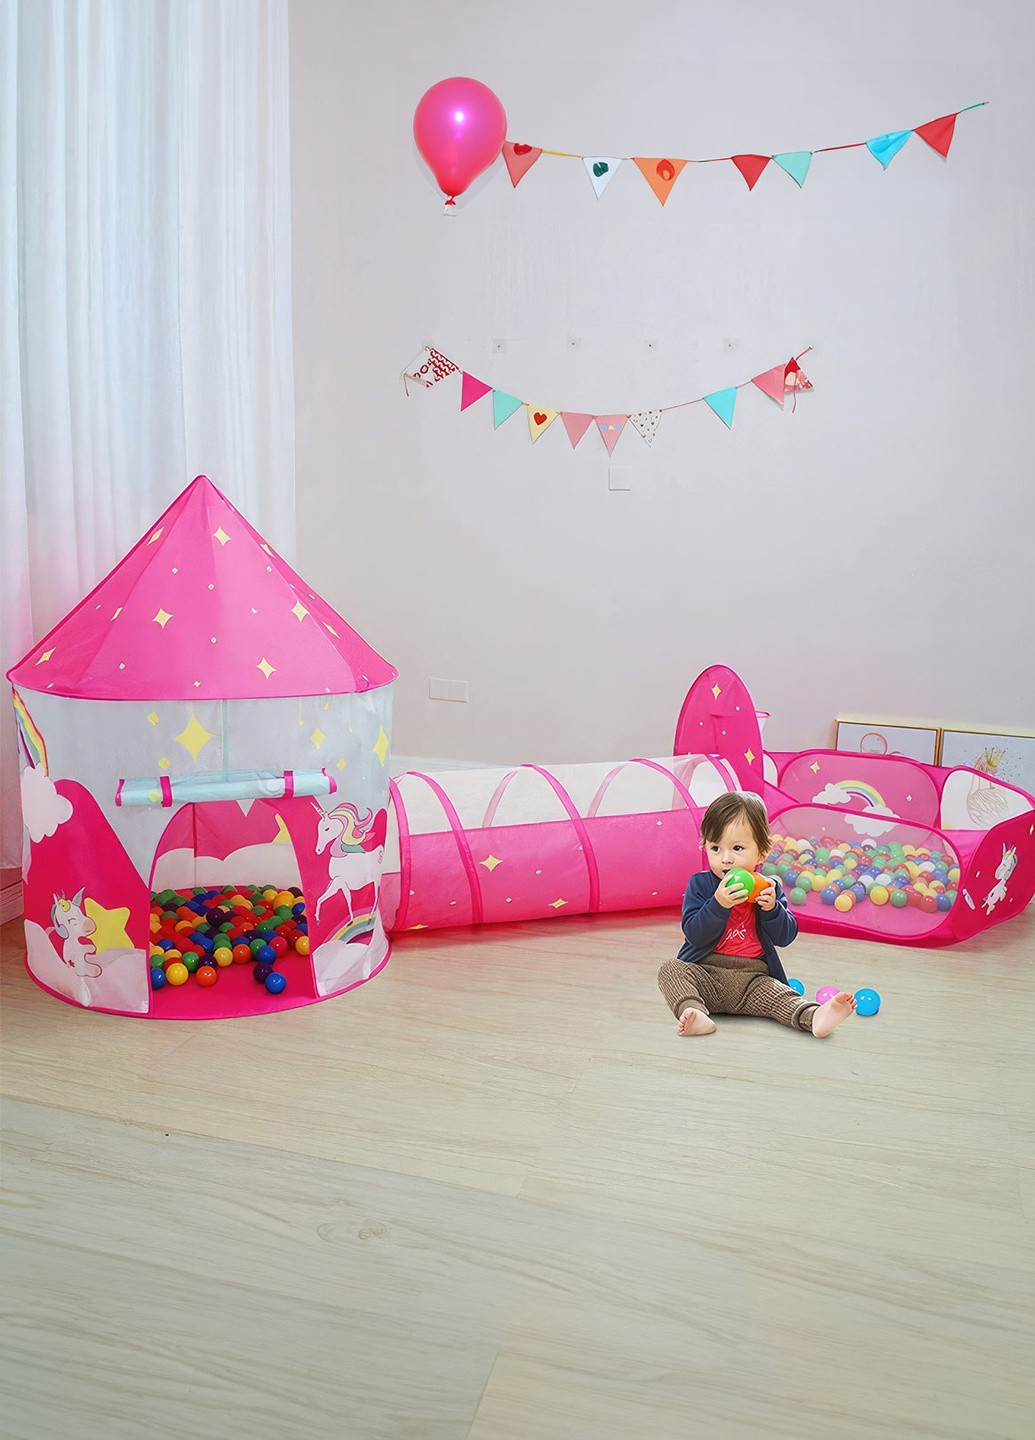 Палатка детская игровая Единорог / большая детская палатка с тоннелем и сухим бассейном / домик с единорогом для детей Розовый DobraMAMA (259925591)